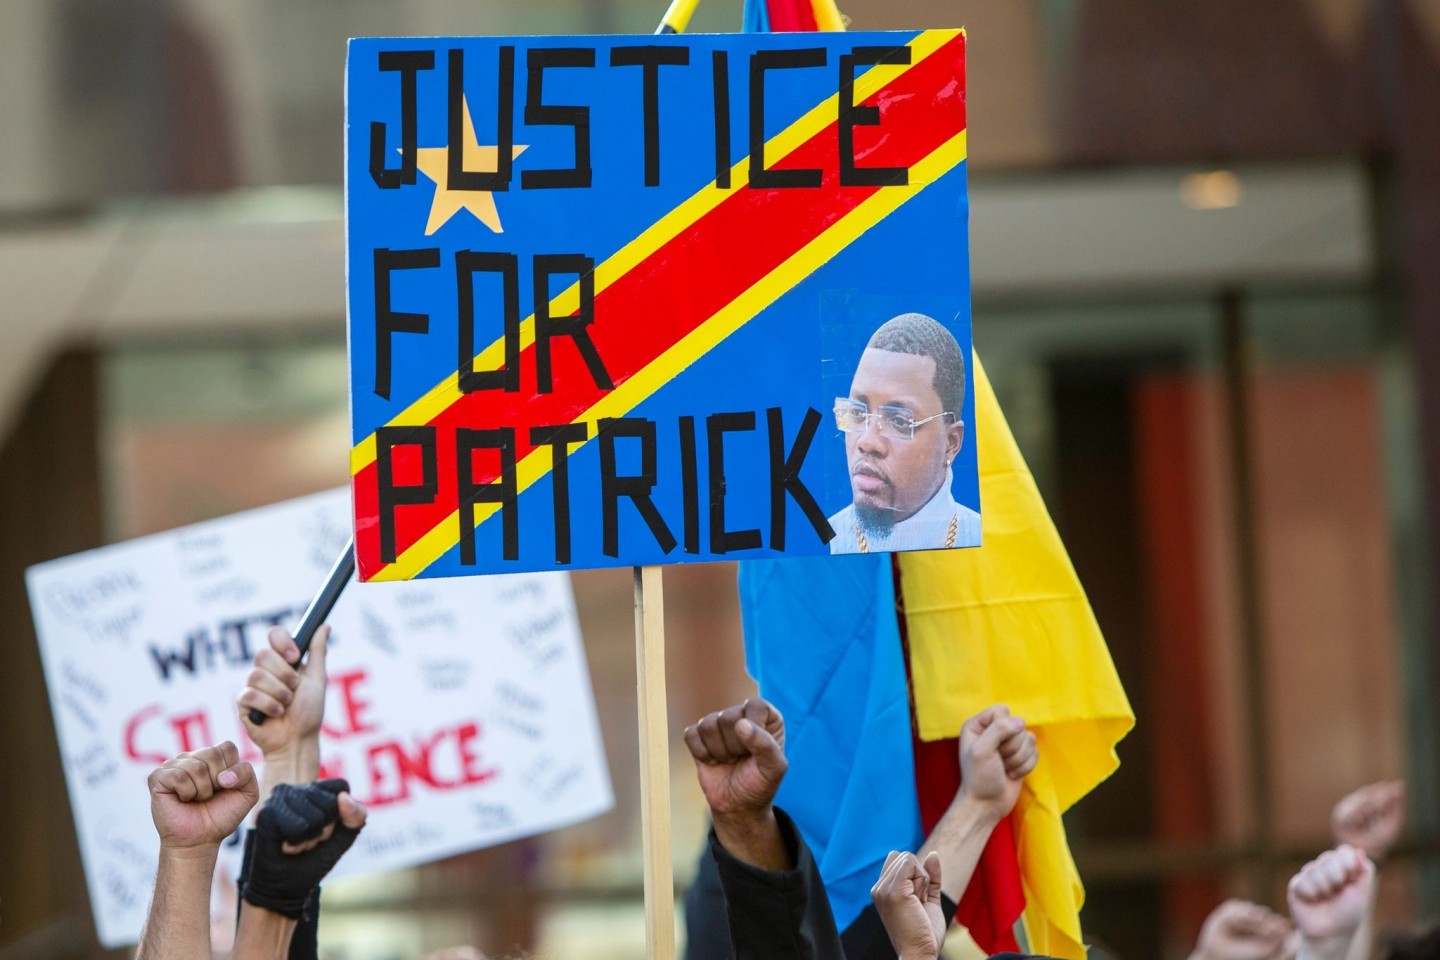 Aktivisten demonstrieren in Grand Rapids im US-Bundestaat Michigan für Patrick Lyoya. Einmal mehr sorgt ein tödlicher Polizeieinsatz in den USA für Aufregung, bei dem ein schwarzer Mann g...